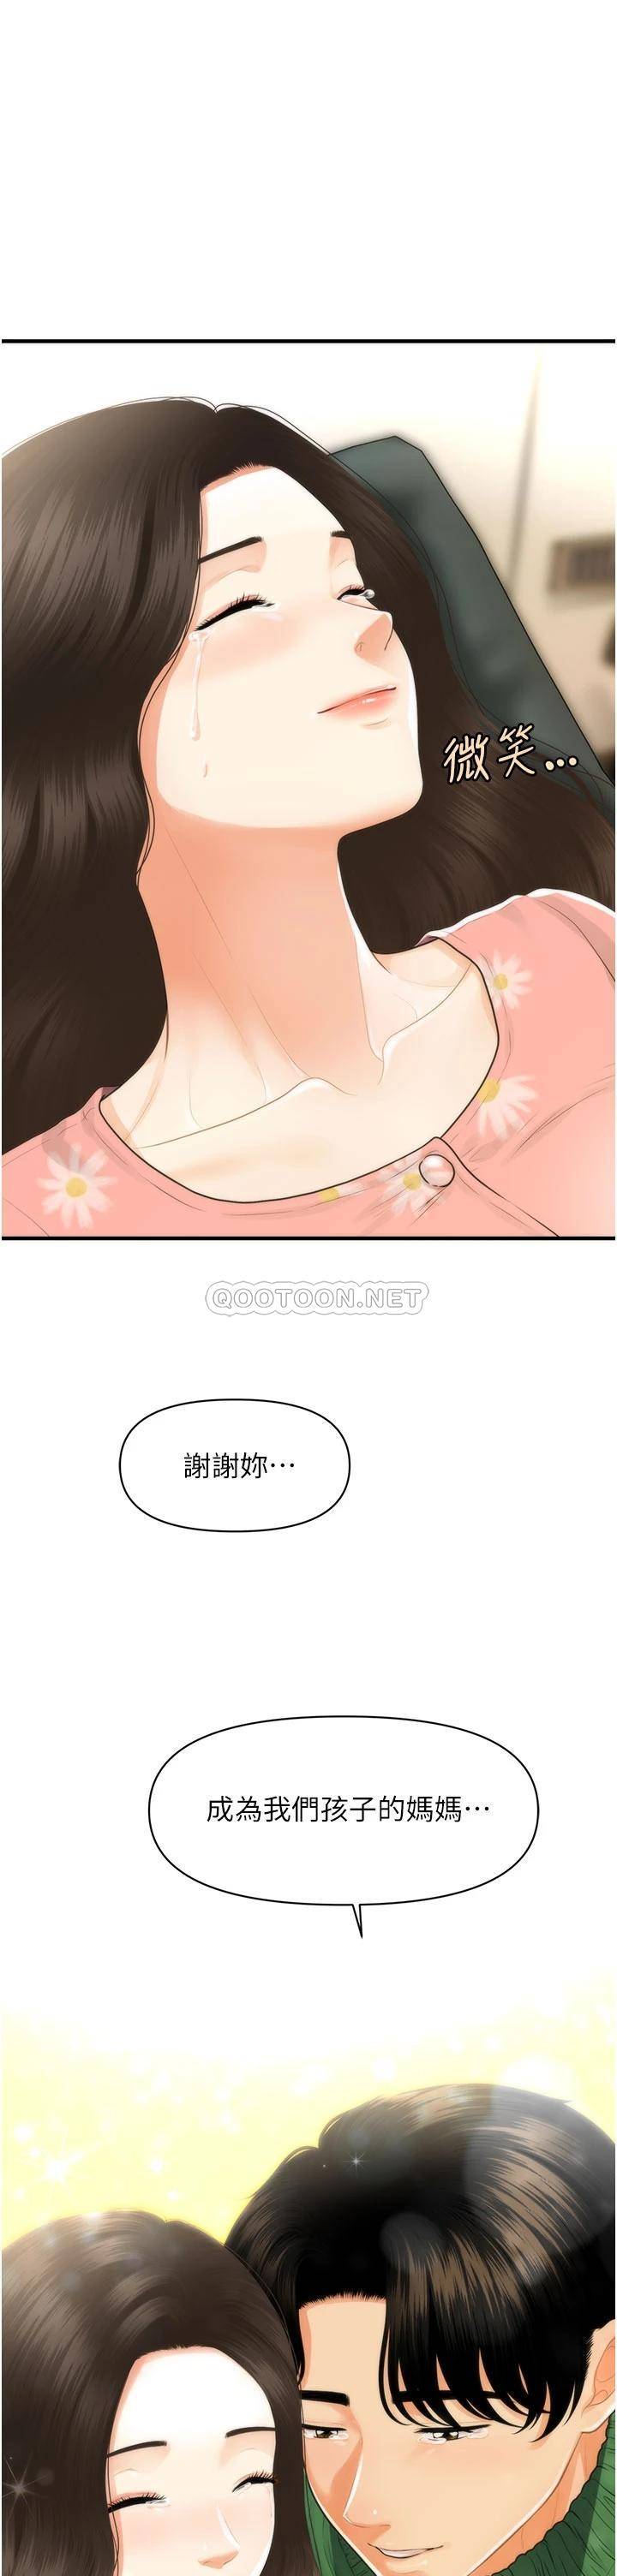 韩国污漫画 醫美奇雞 最终话幸福快乐的生活 45